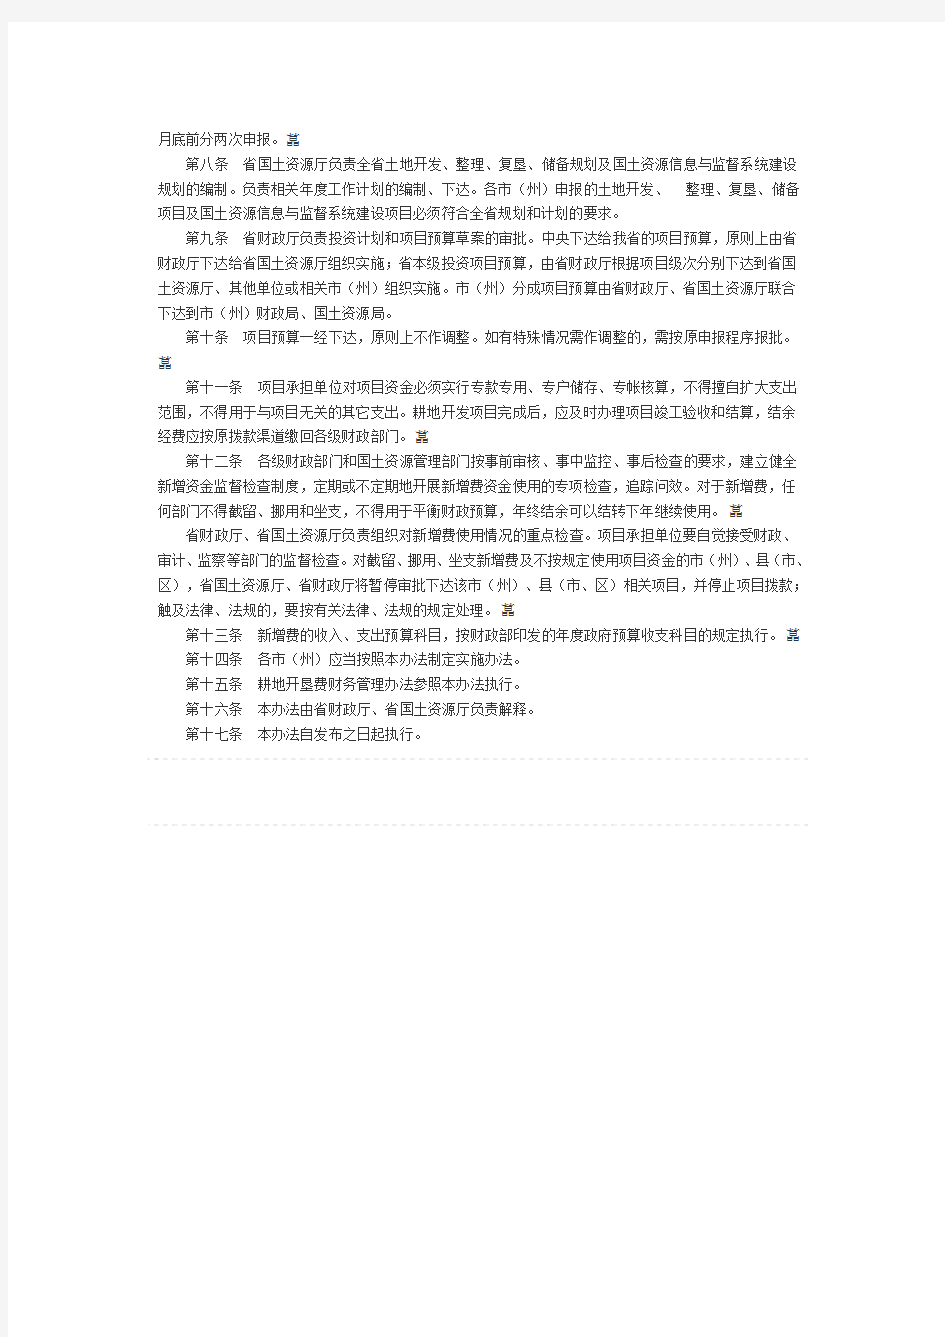 湖南省新增建设用地土地有偿使用费财务管理暂行办法